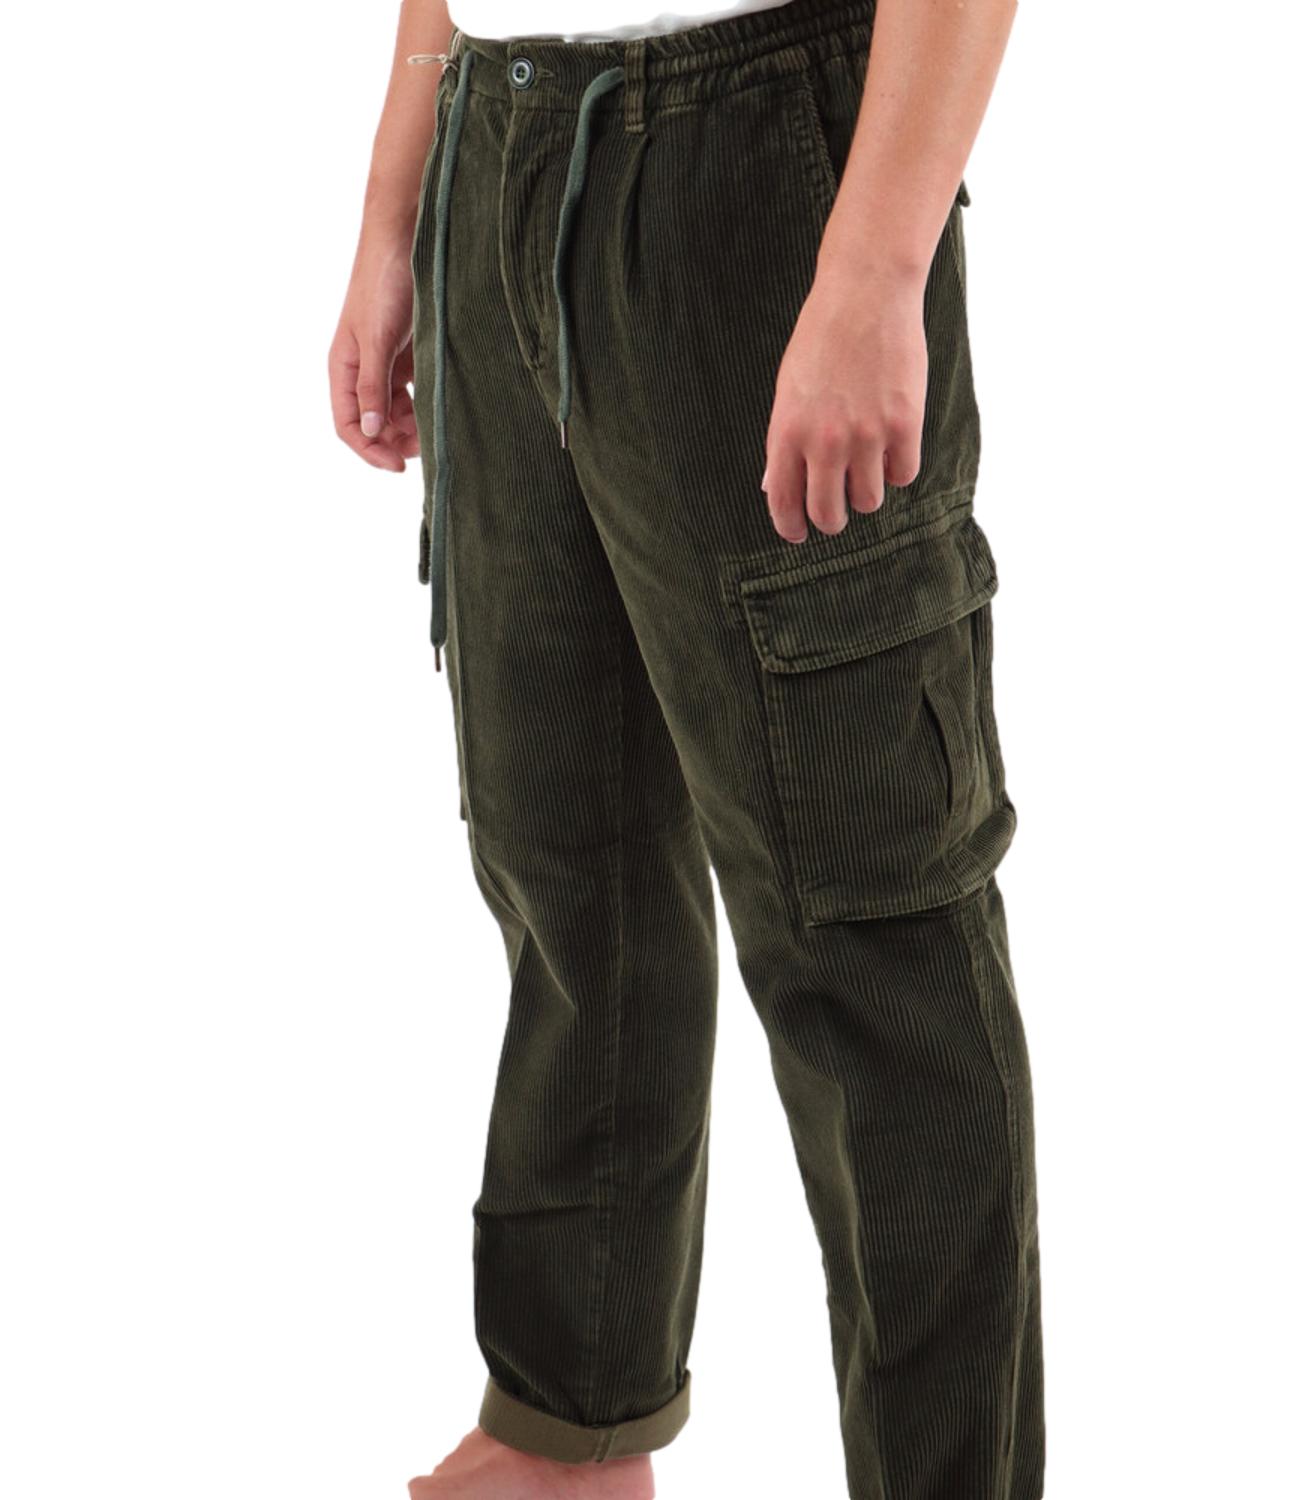 Aikoc men's cargo trousers in velvet with dark green pockets